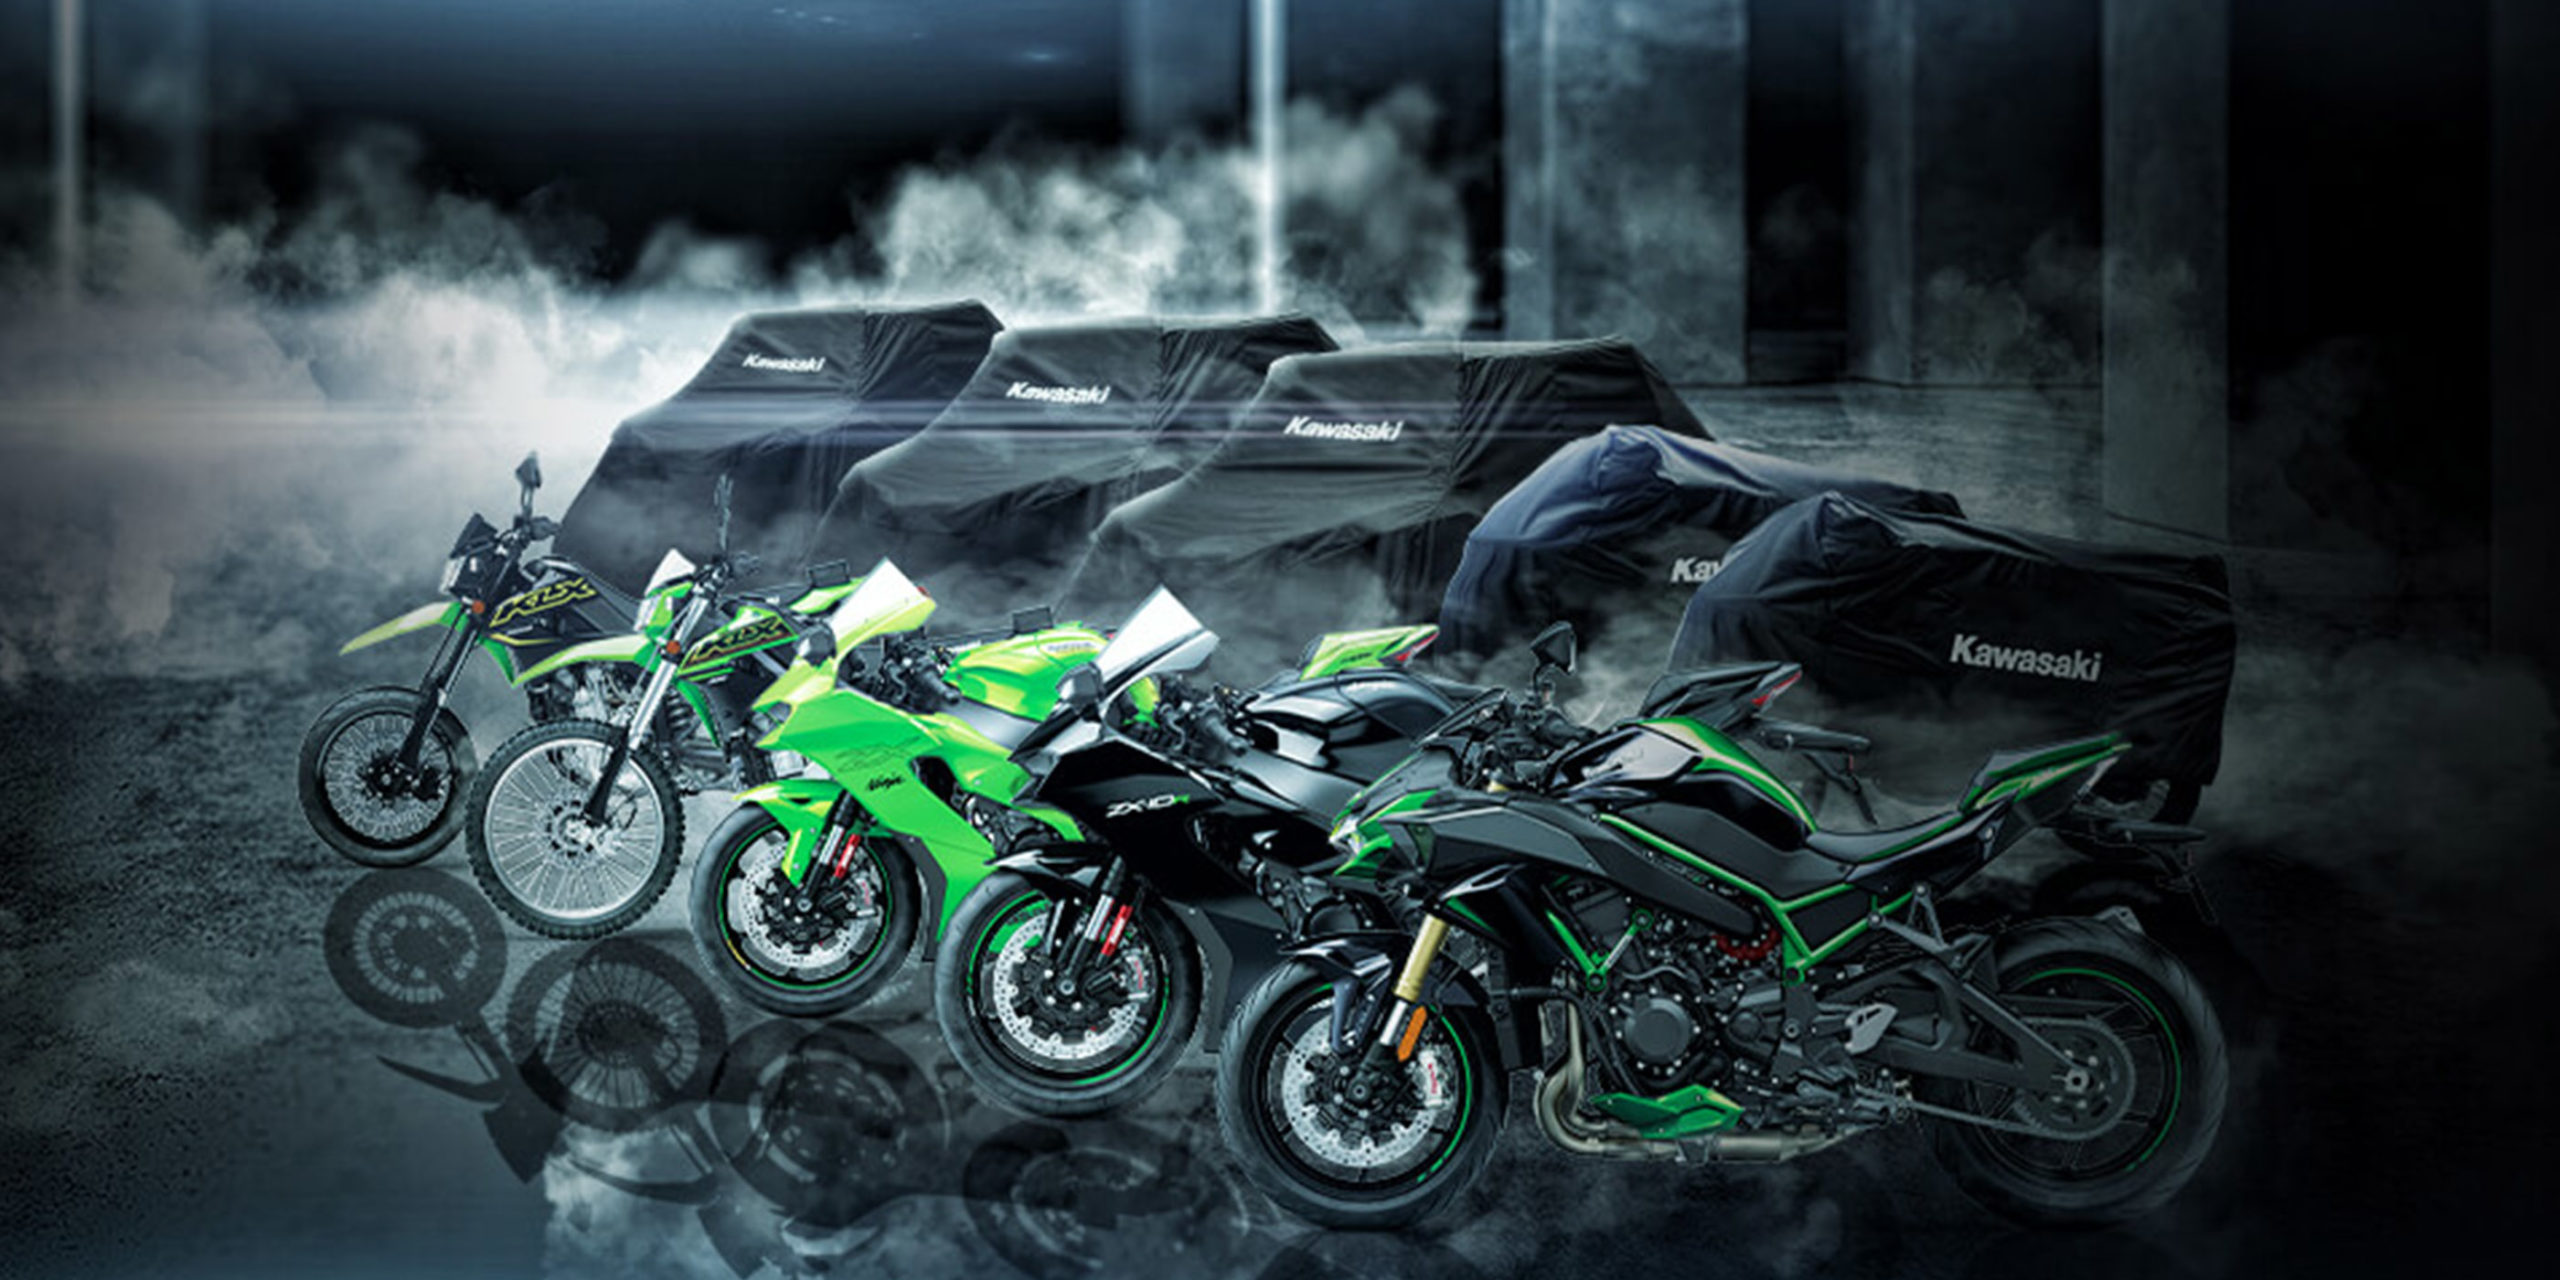 Kawasaki Announces 5 New Motorcycle Models